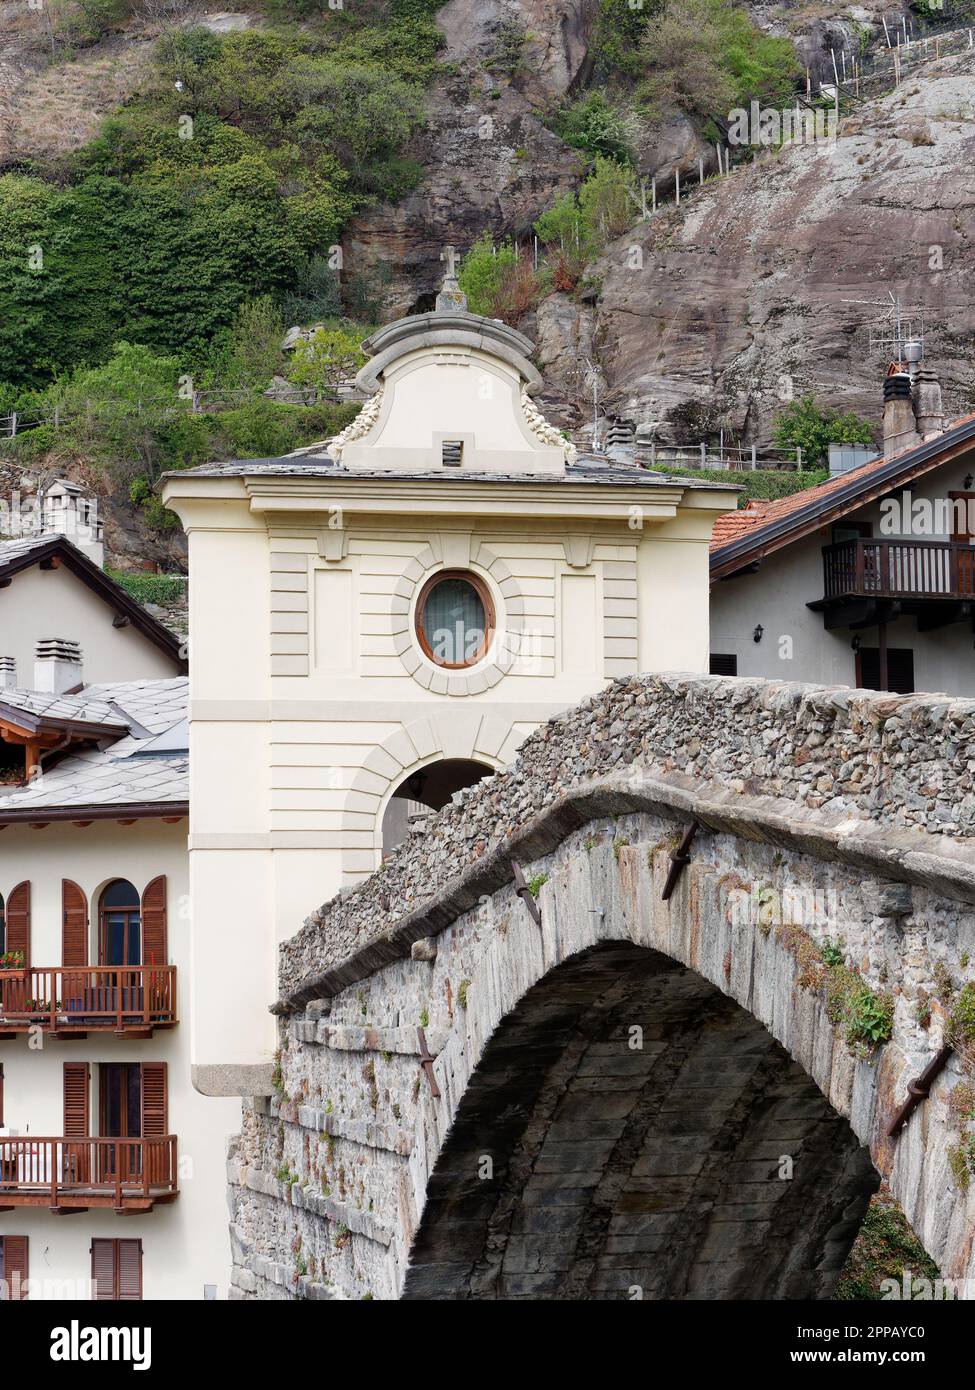 Pont romain enjambant la rivière Dora Baltea dans la ville de Pont-Saint-Martin, Vallée d'Aoste, au nord-ouest de l'Italie Banque D'Images